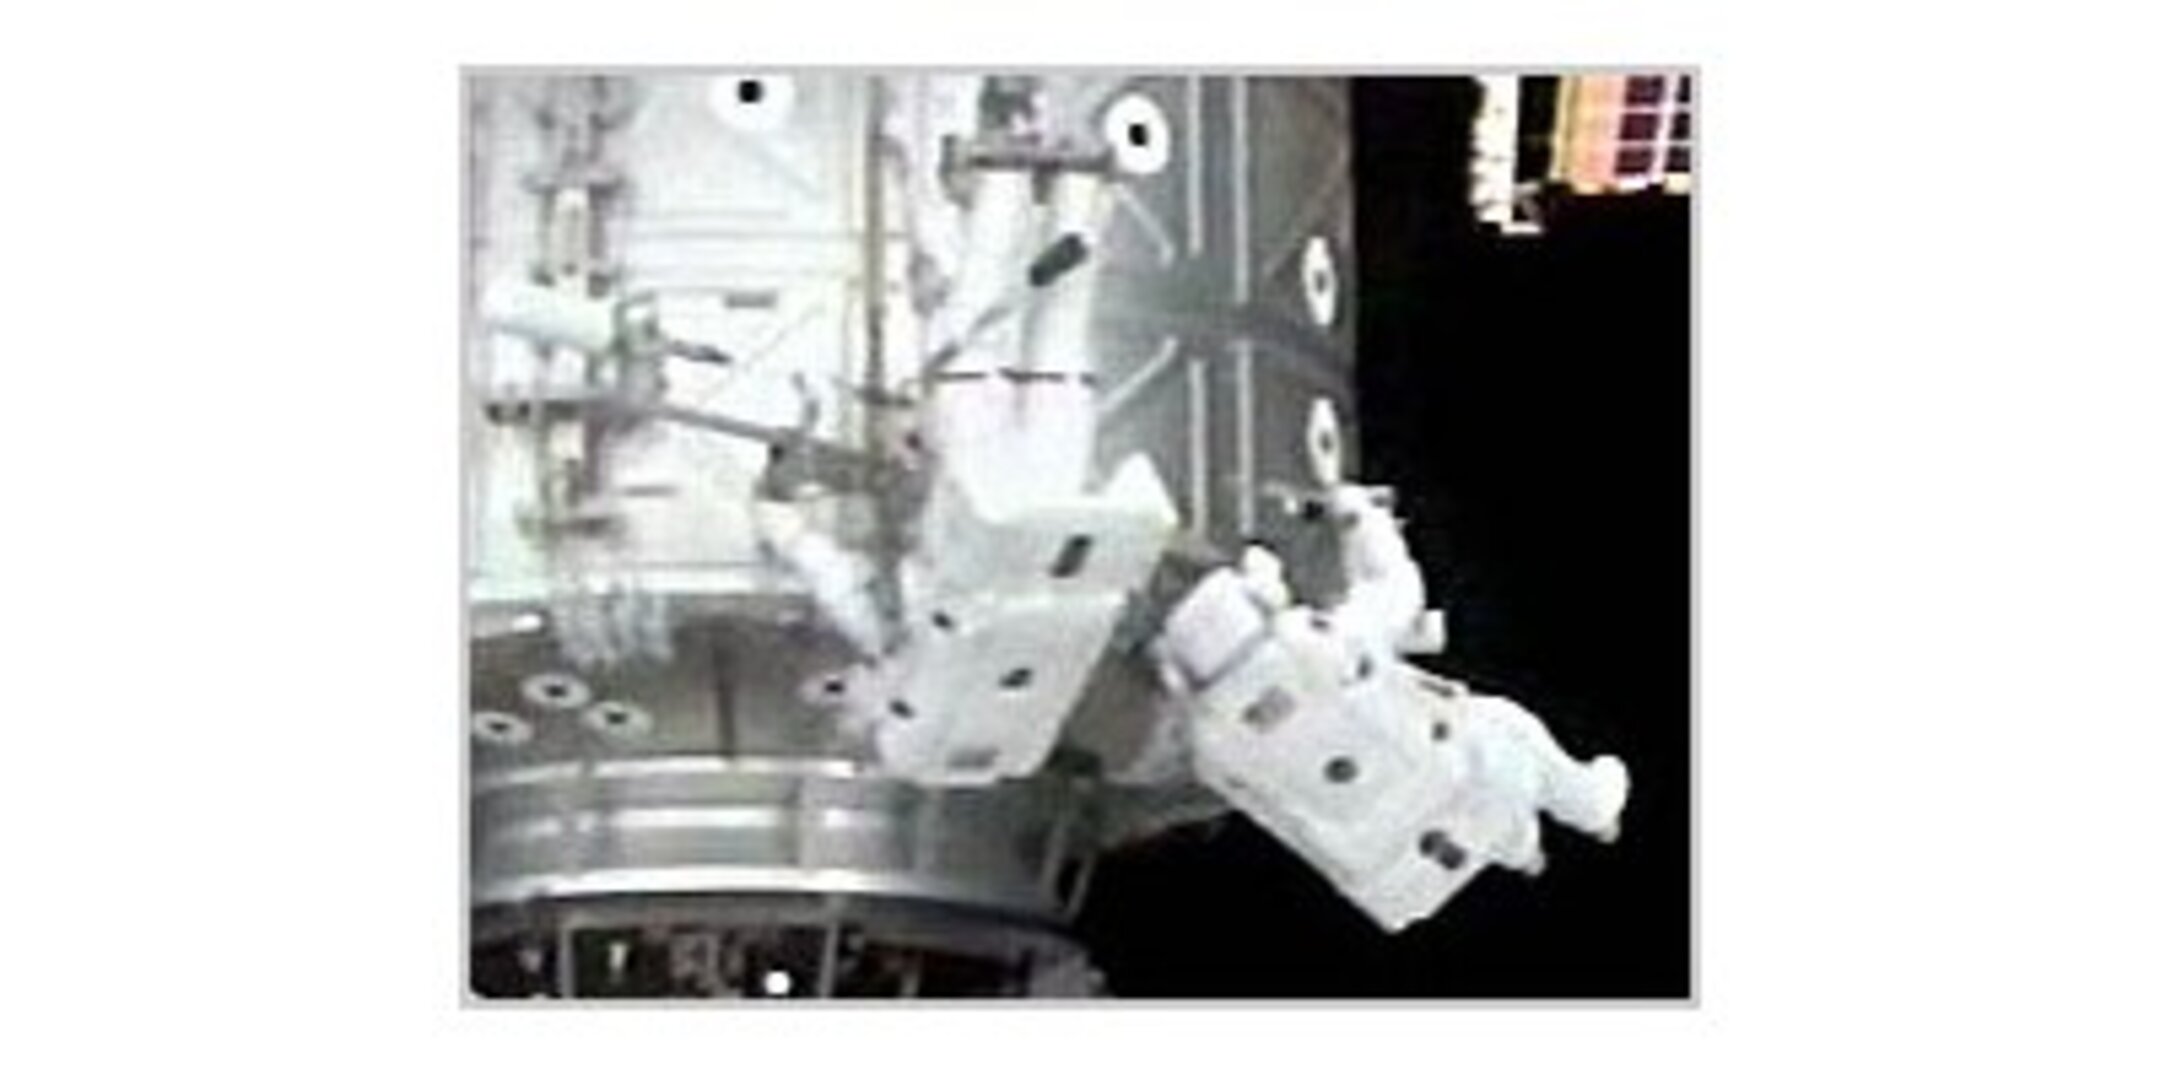 STS-100 First spacewalk